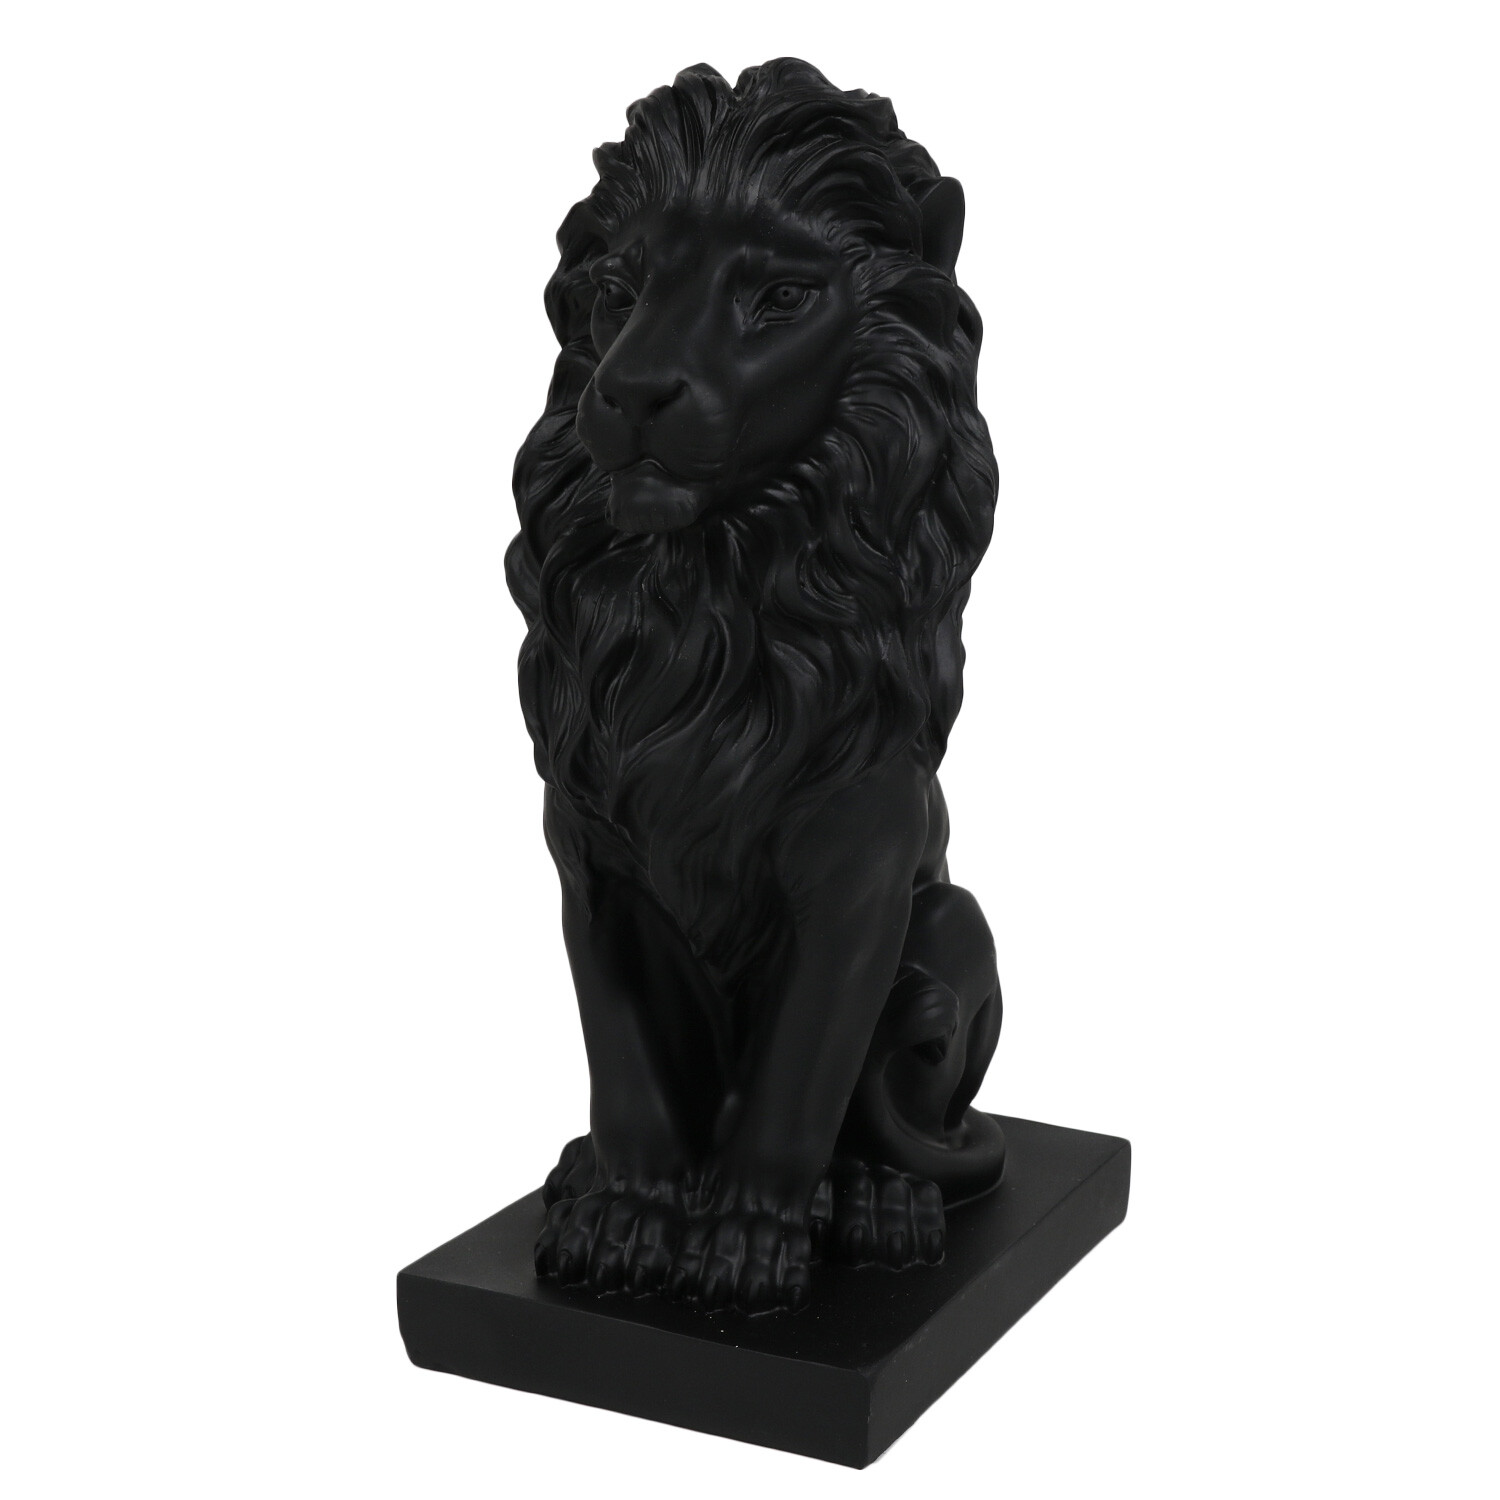 Matte Black Standing Lion Ornament Image 3